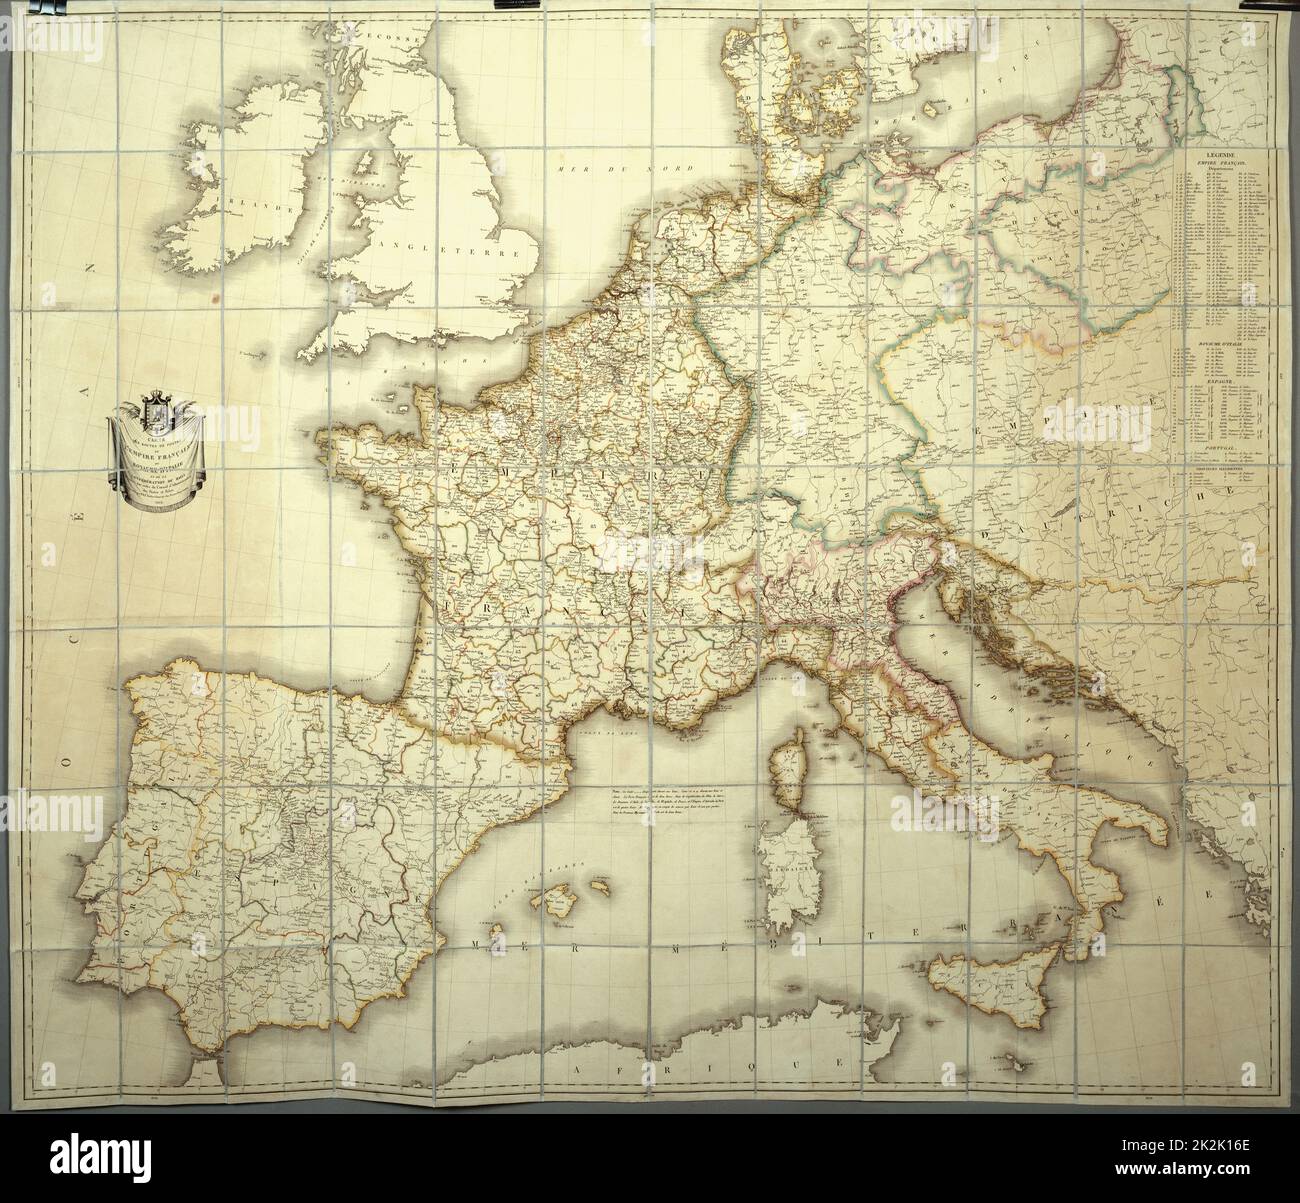 Mapa del Imperio Francés en 1812 copia personal del Emperador para su estudio topográfico Papel forrado de seda (110 x 80 cm) Una caja contiene el mapa (ver PJC03041 CHA288) Foto de stock